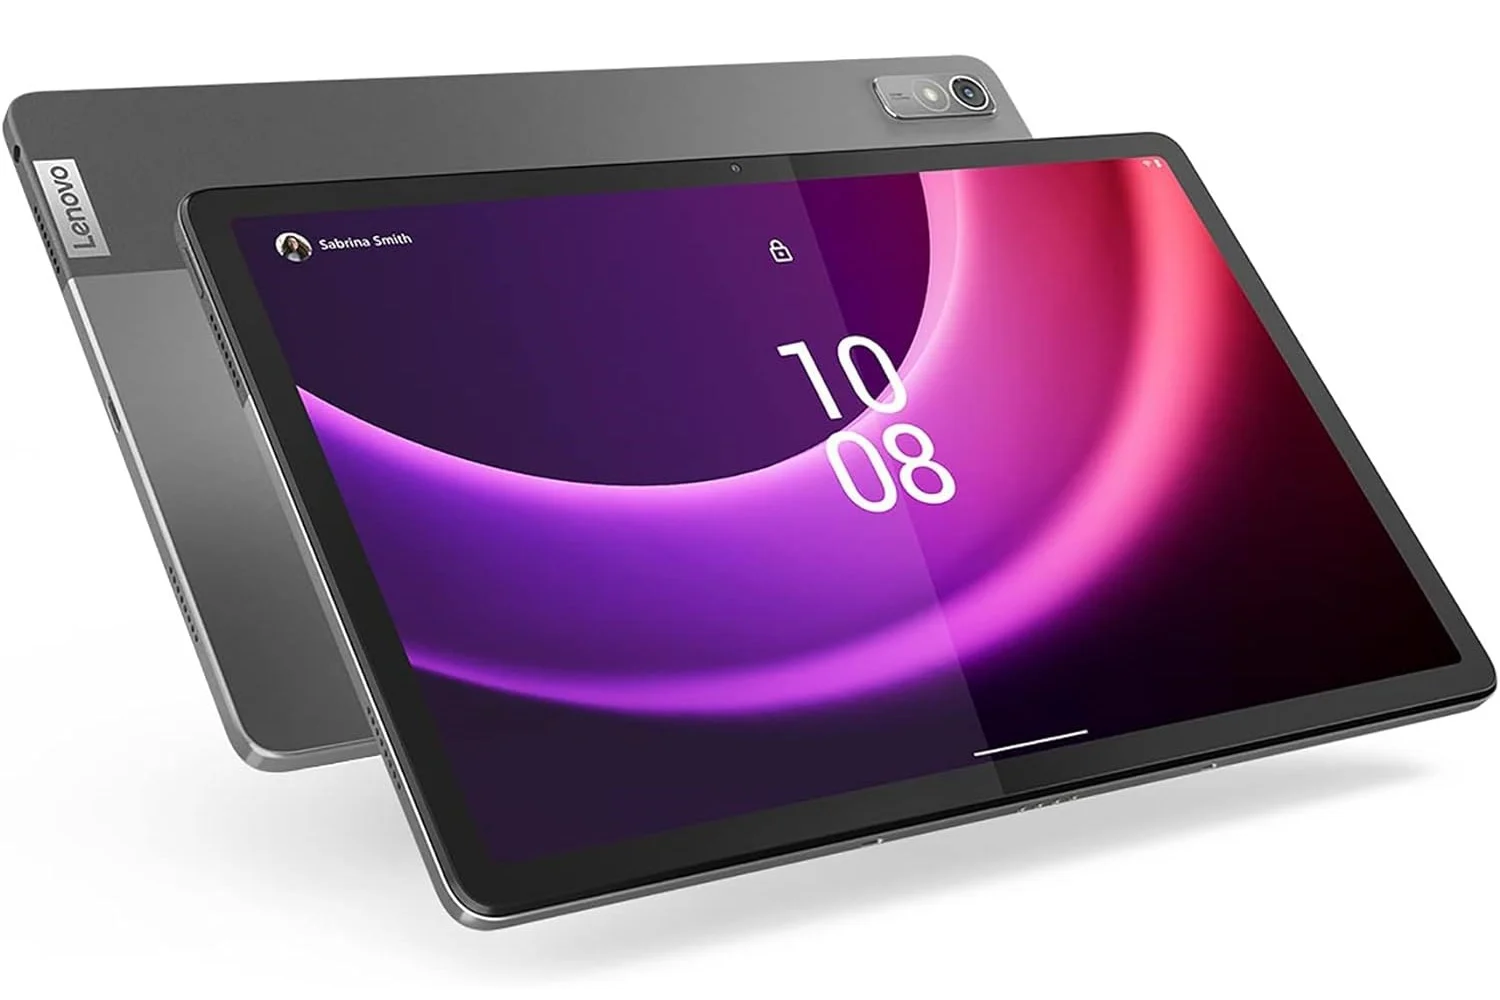 Promo de rêve sur cette tablette Lenovo, disponible à prix mini sur Amazon